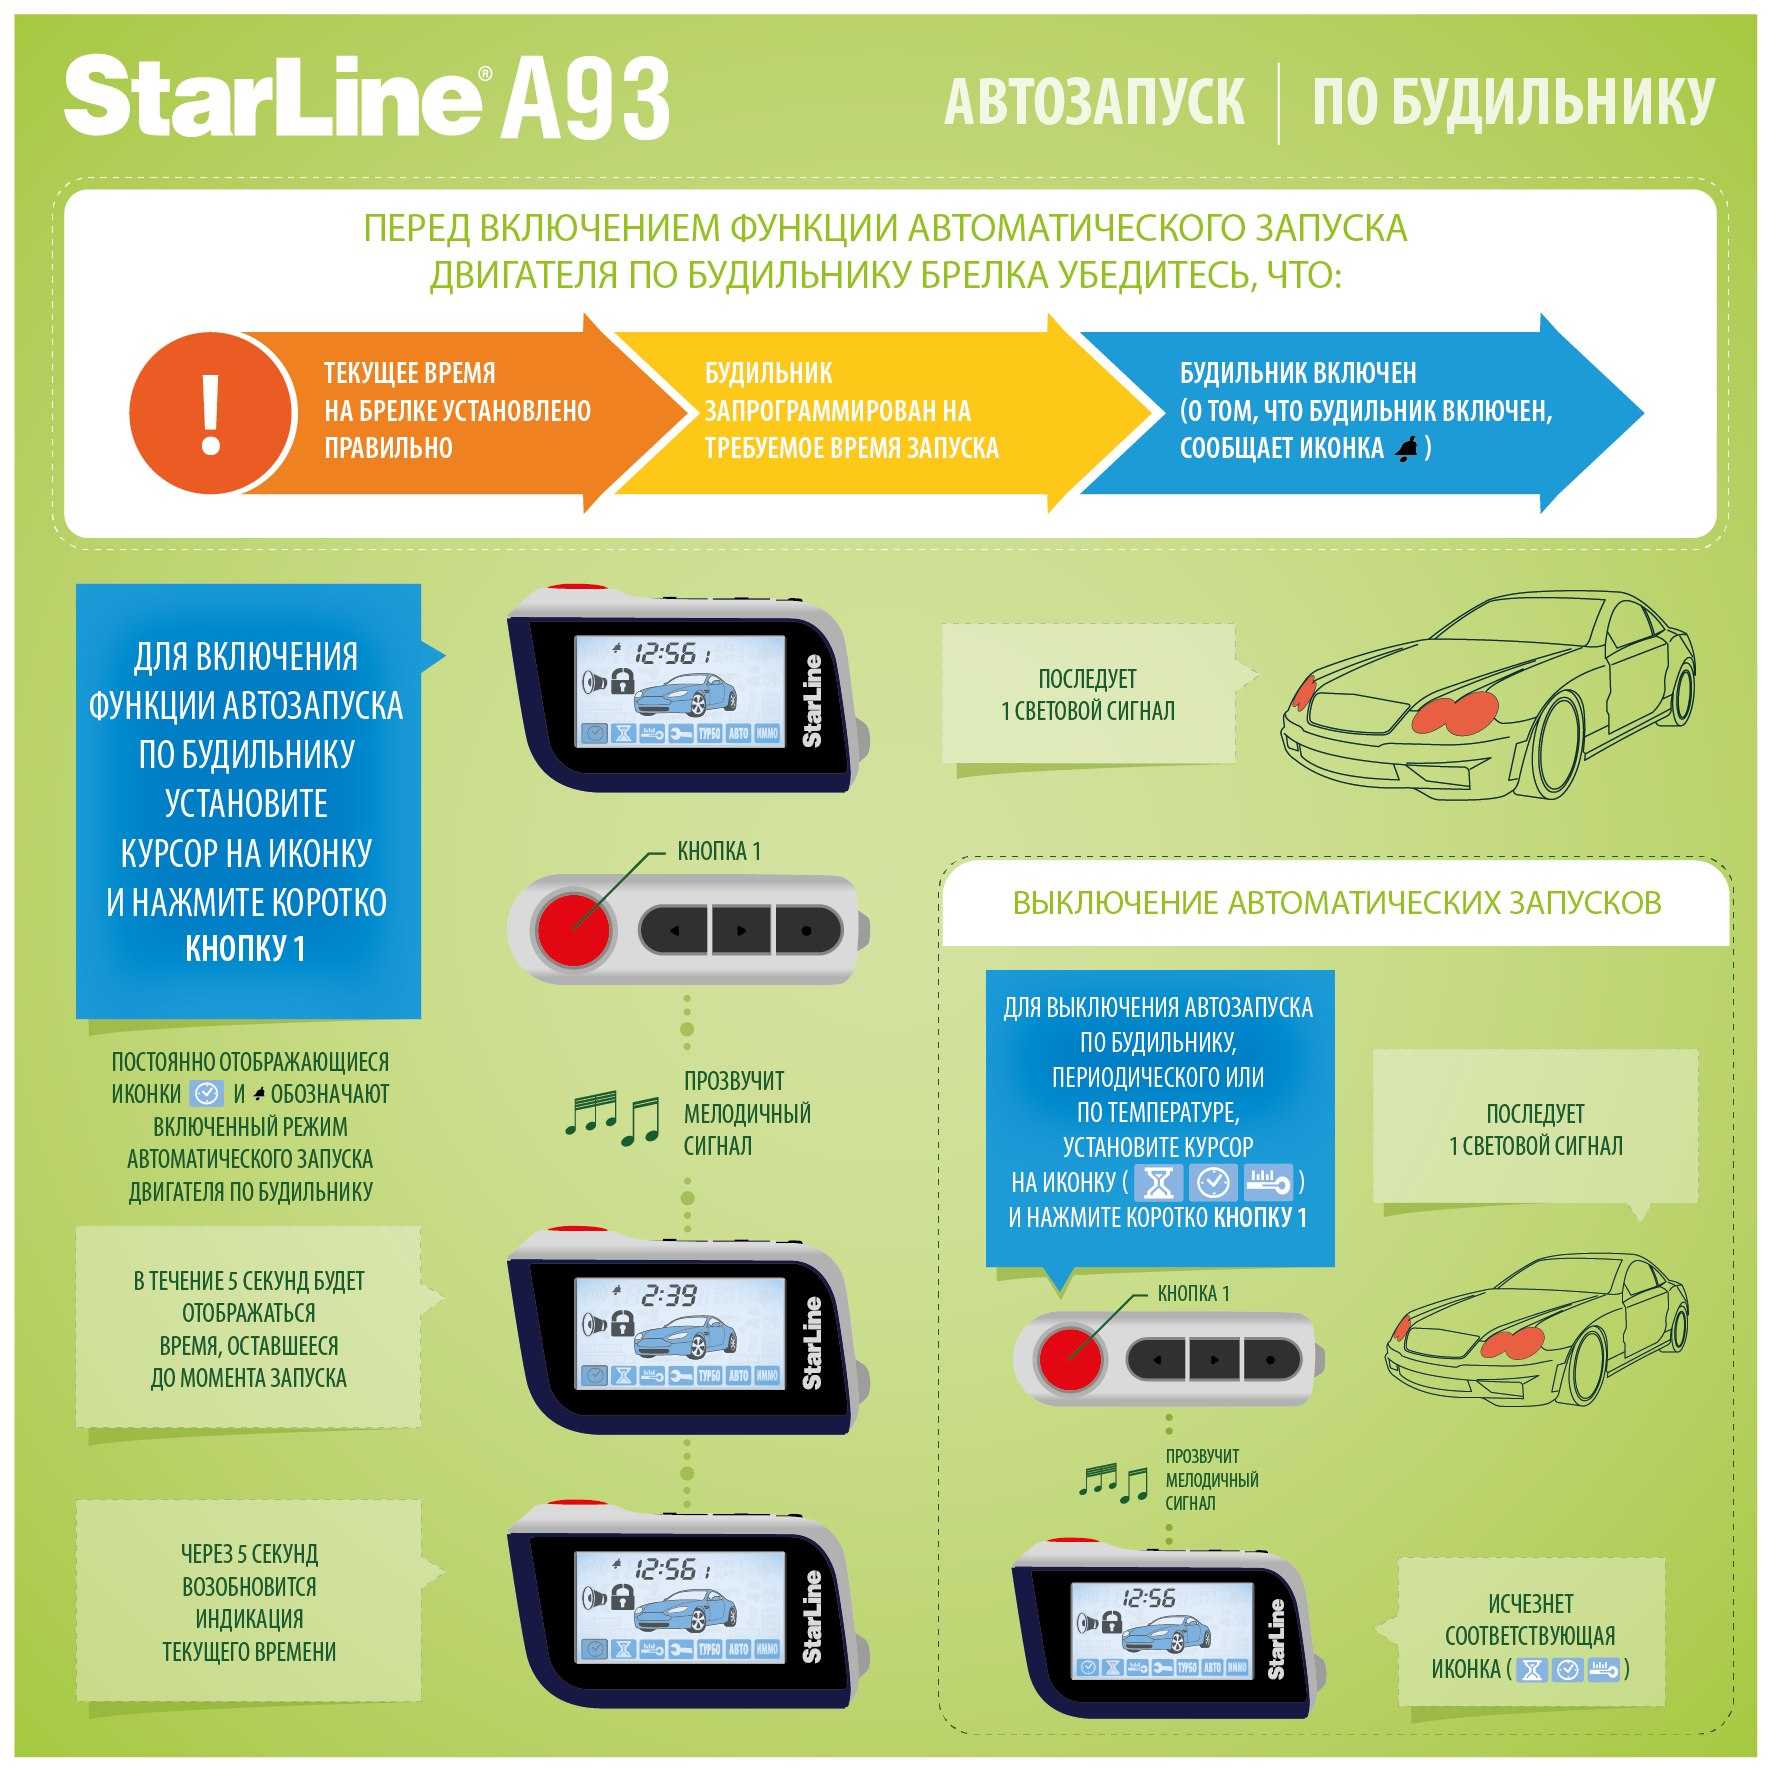 Настройка брелка starline a93 🚘: таблица программирования сигнализации, функции и инструкция, как настроить датчики удара и автозапуск по времени и температуре